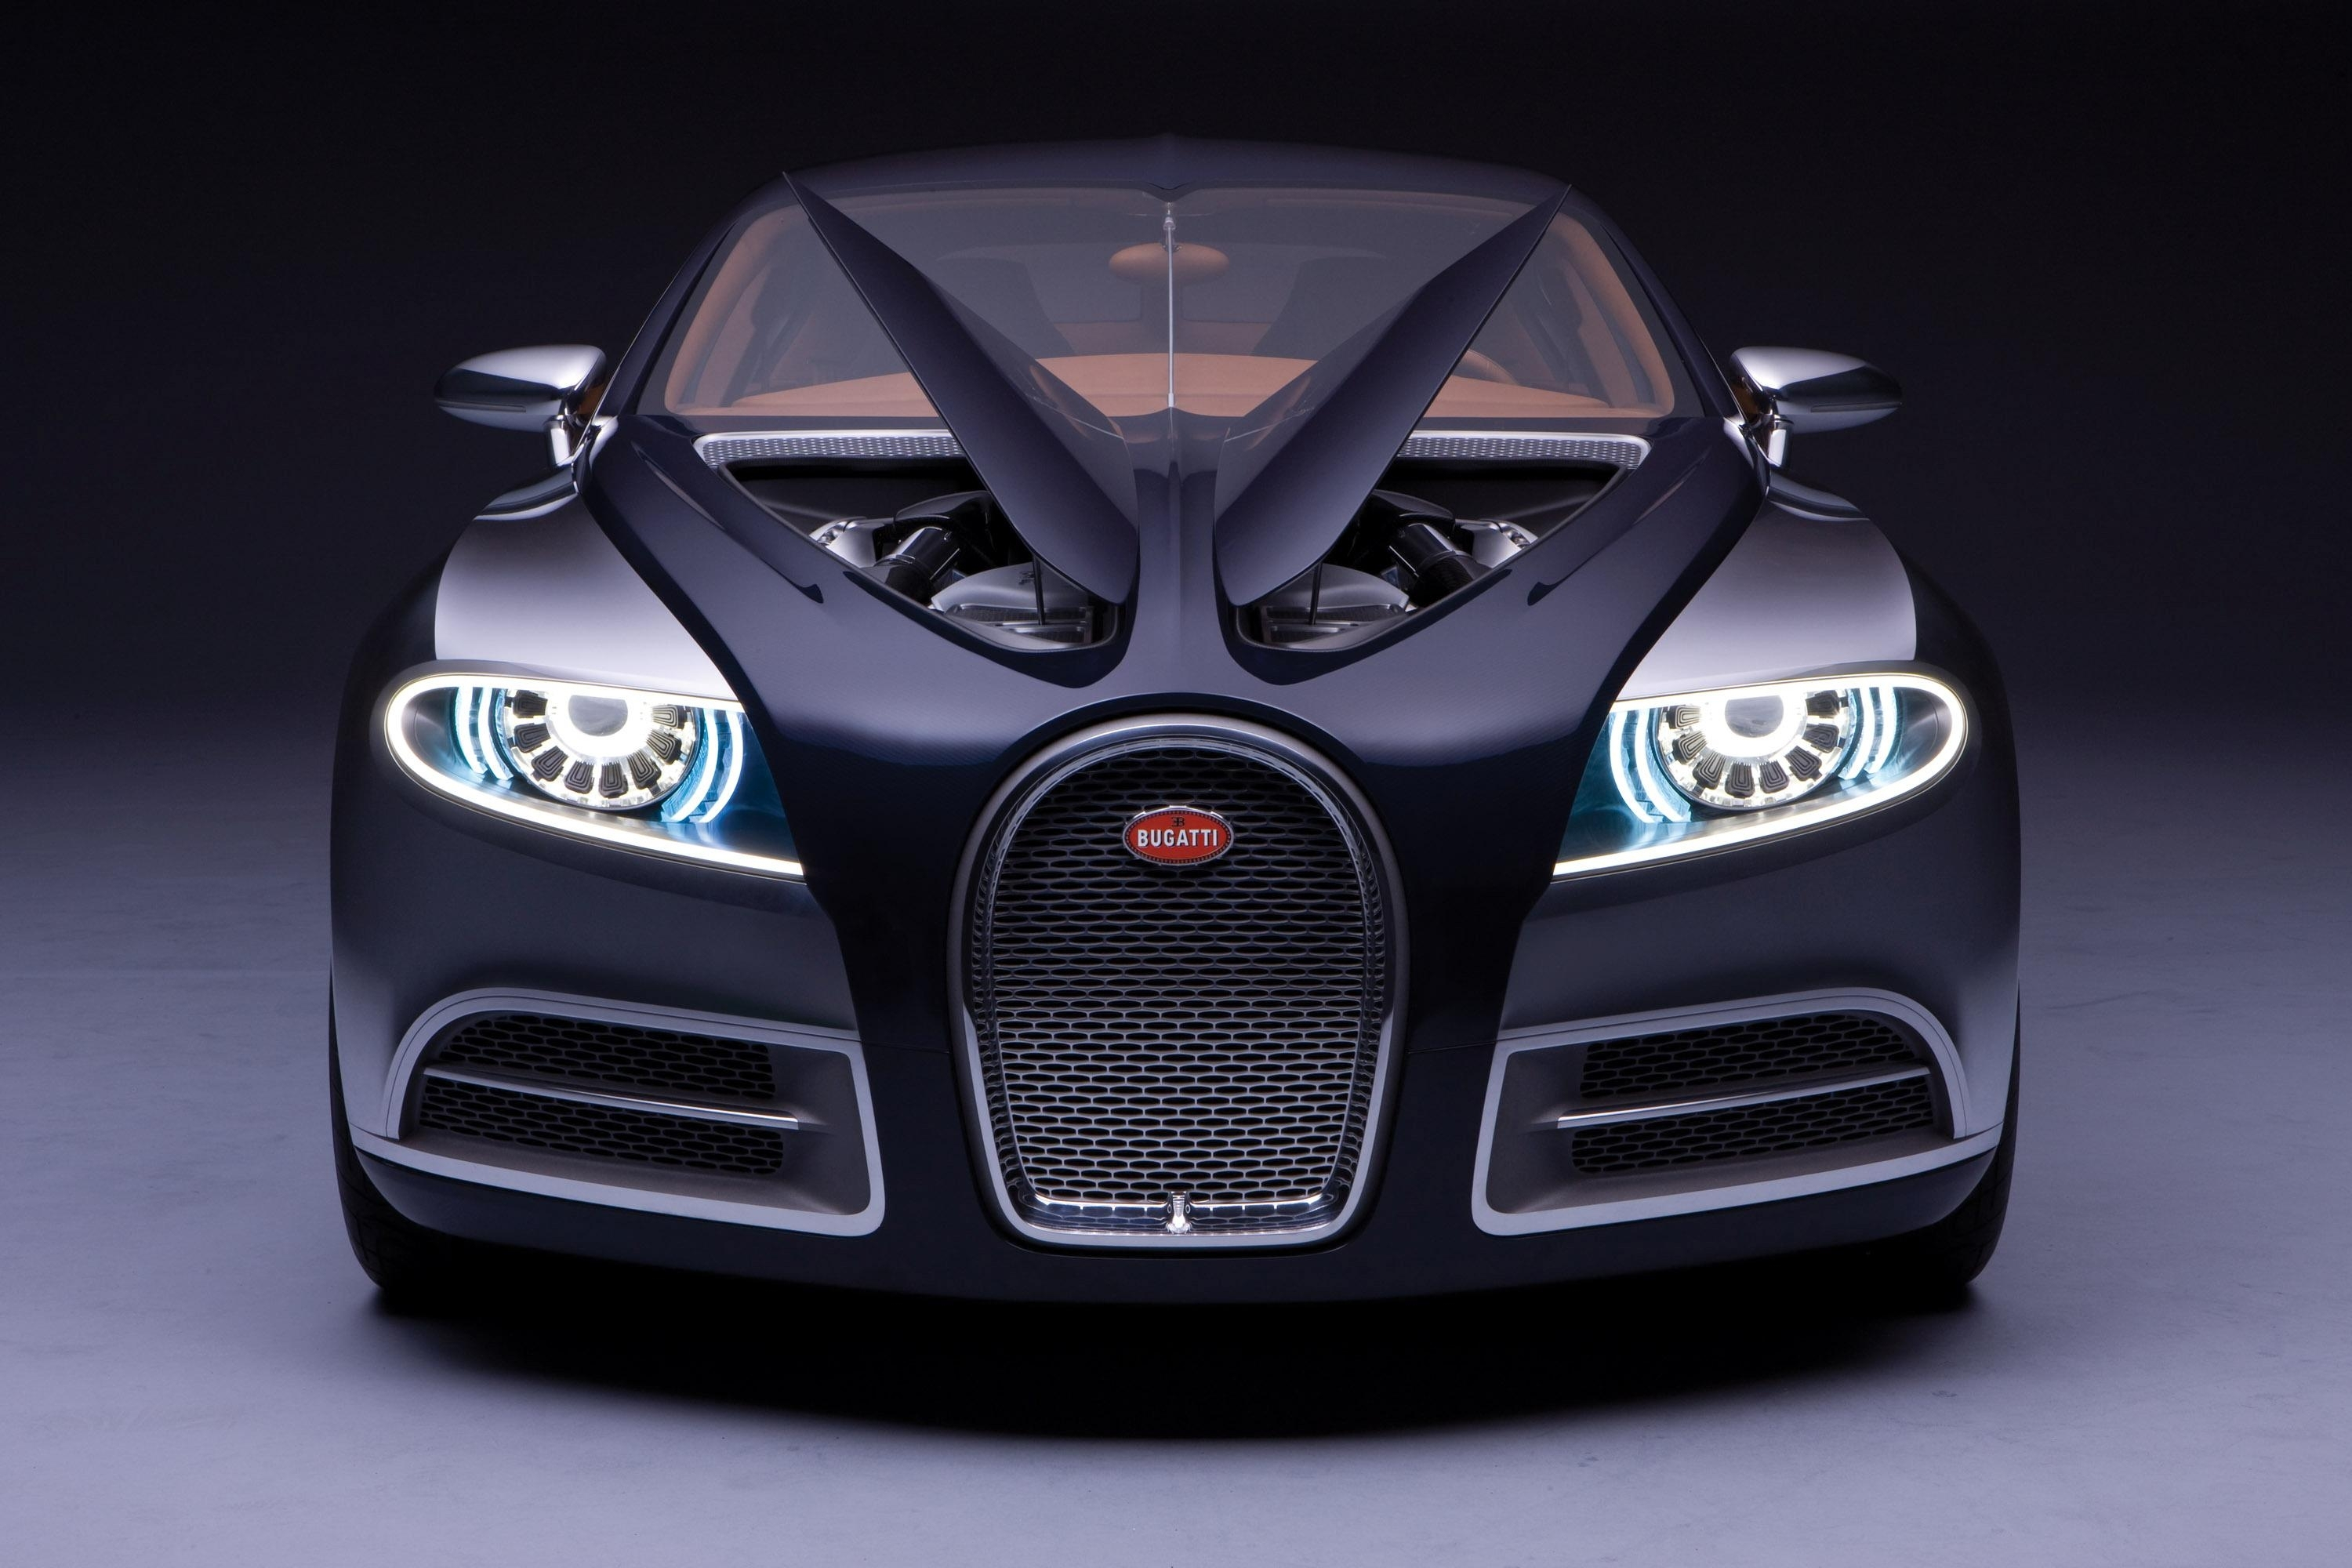 Bugatti 16c. Bugatti Galibier 16c 2018. Bugatti Galibier 16c концепт-кар. Bugatti Galibier 16cконцепт-кар. 2009 Bugatti 16c Galibier Concept.